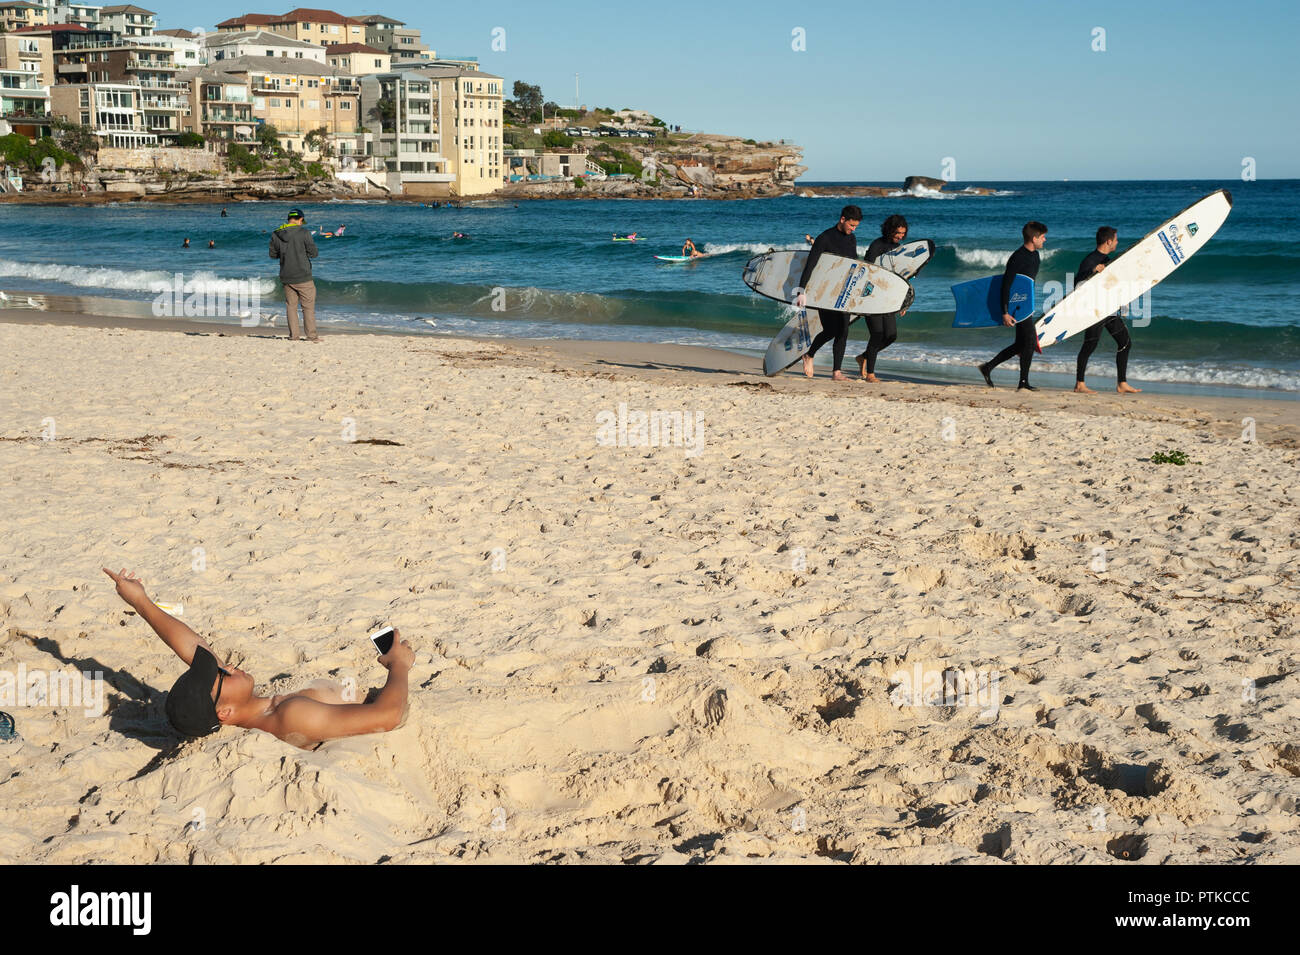 21.09.2018, Sydney, New South Wales, Australia - un joven se ve medio enterrado en la arena en la playa de Bondi, como un grupo de jóvenes surfistas camina por. Foto de stock